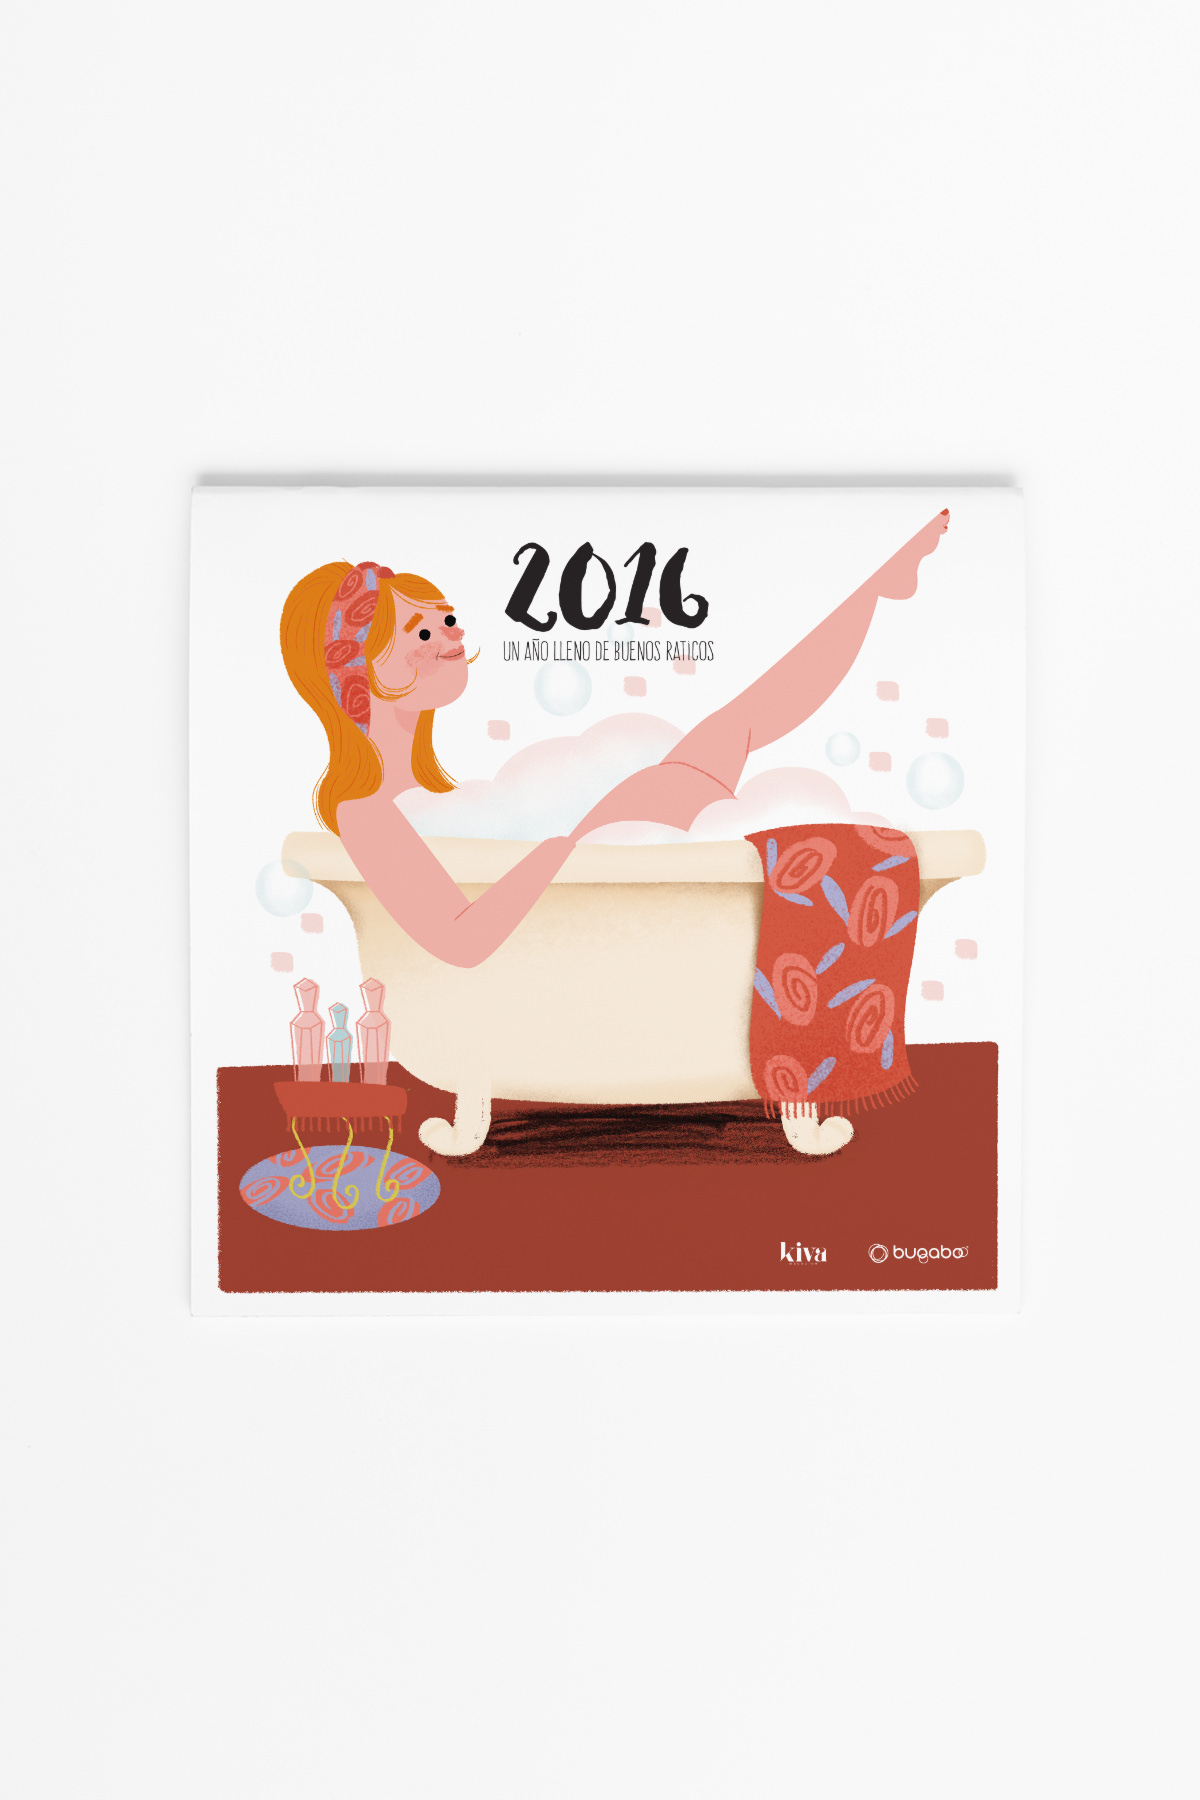 Calendario de pared Kiva magazine 2016, ilustrado por Marisa Morea